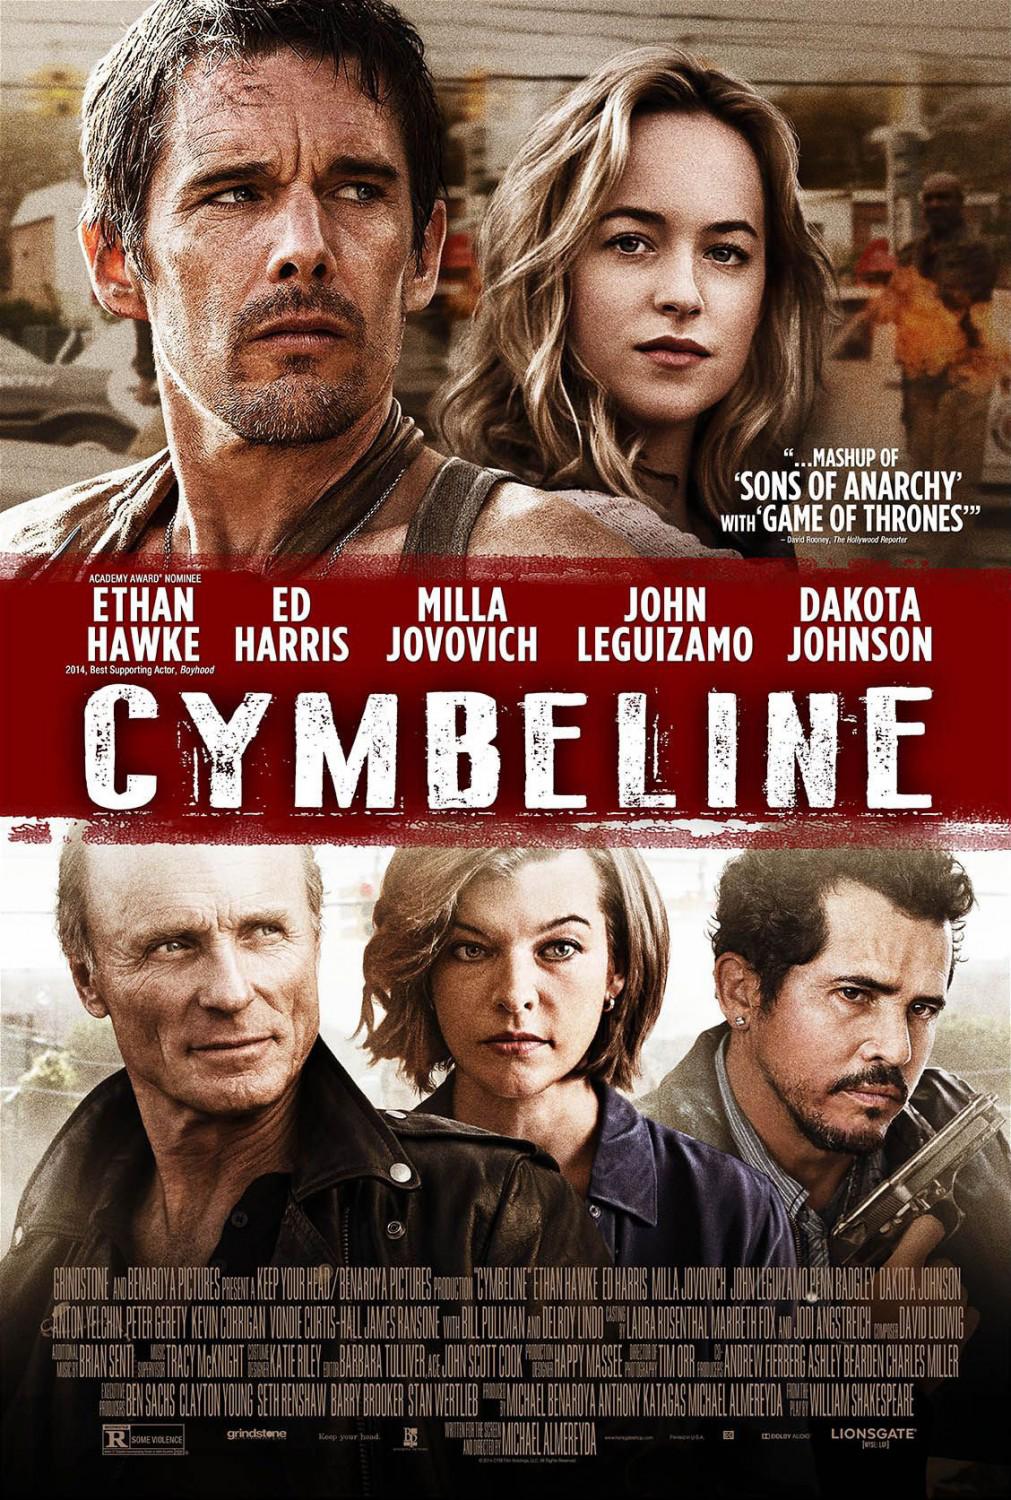 Cymbeline Movie Review